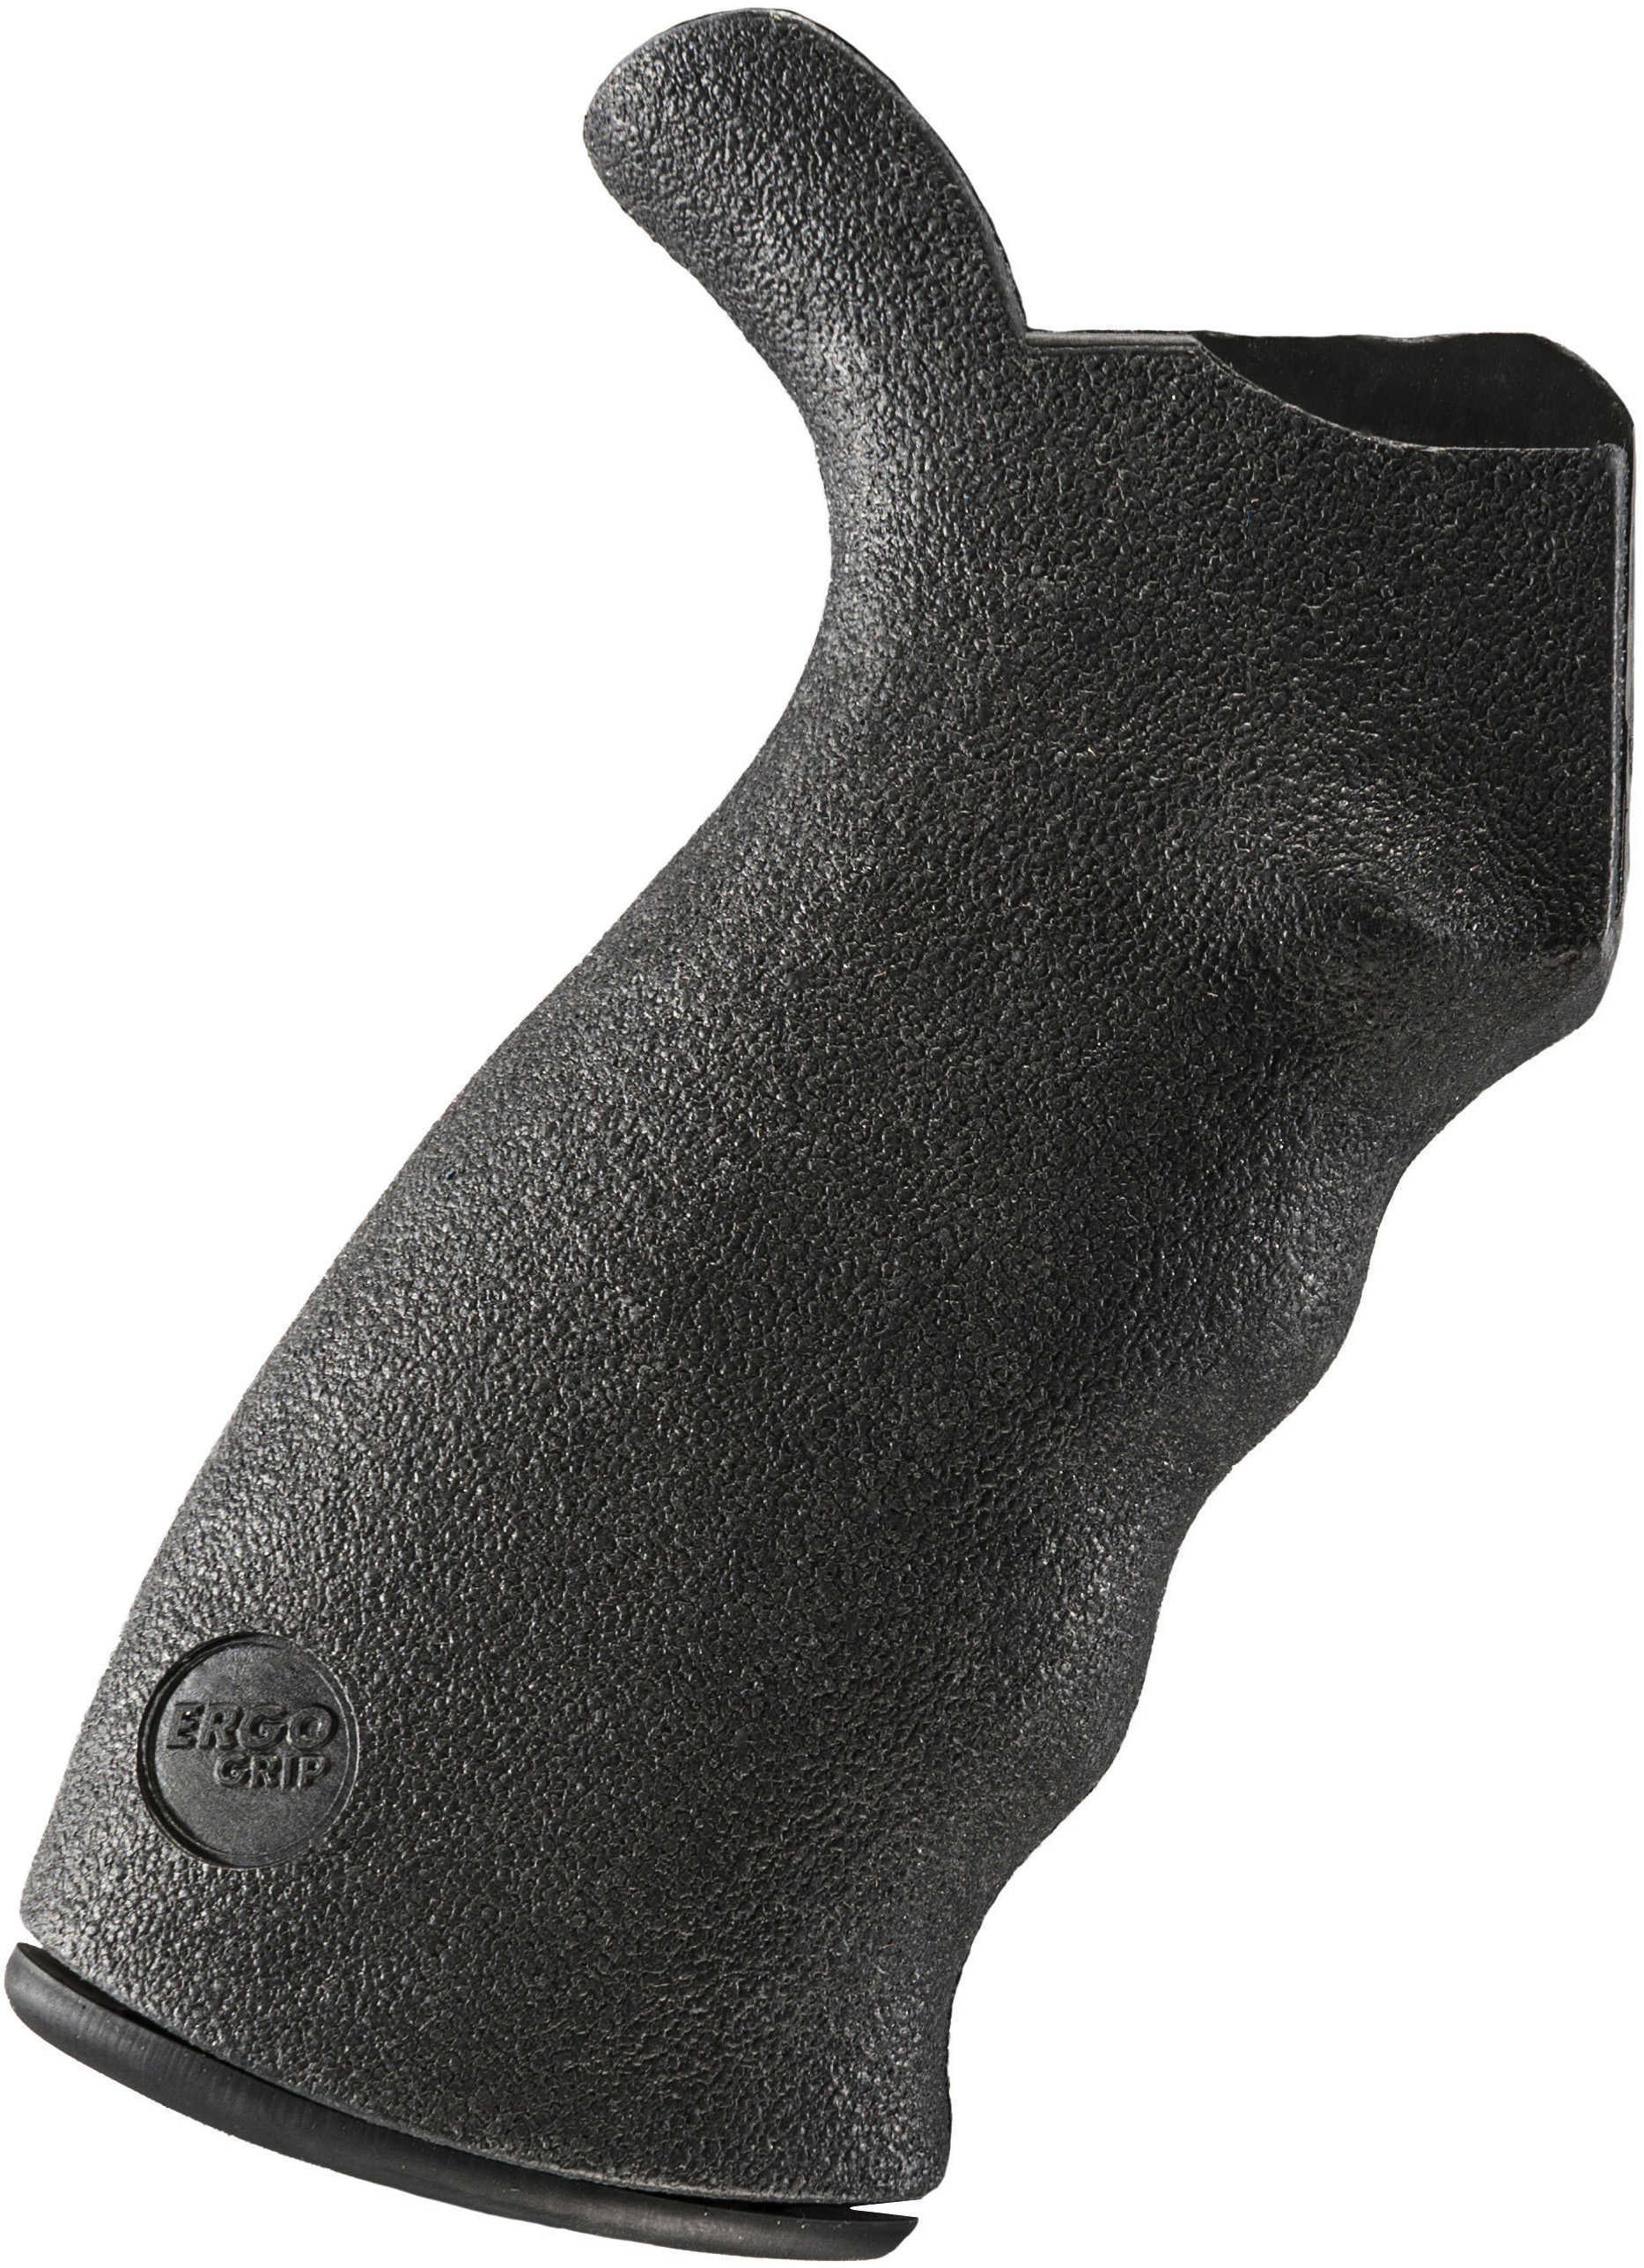 Ergo AR15/M16 Grip Kit Rigid Ambidextrous Black 4015-BK